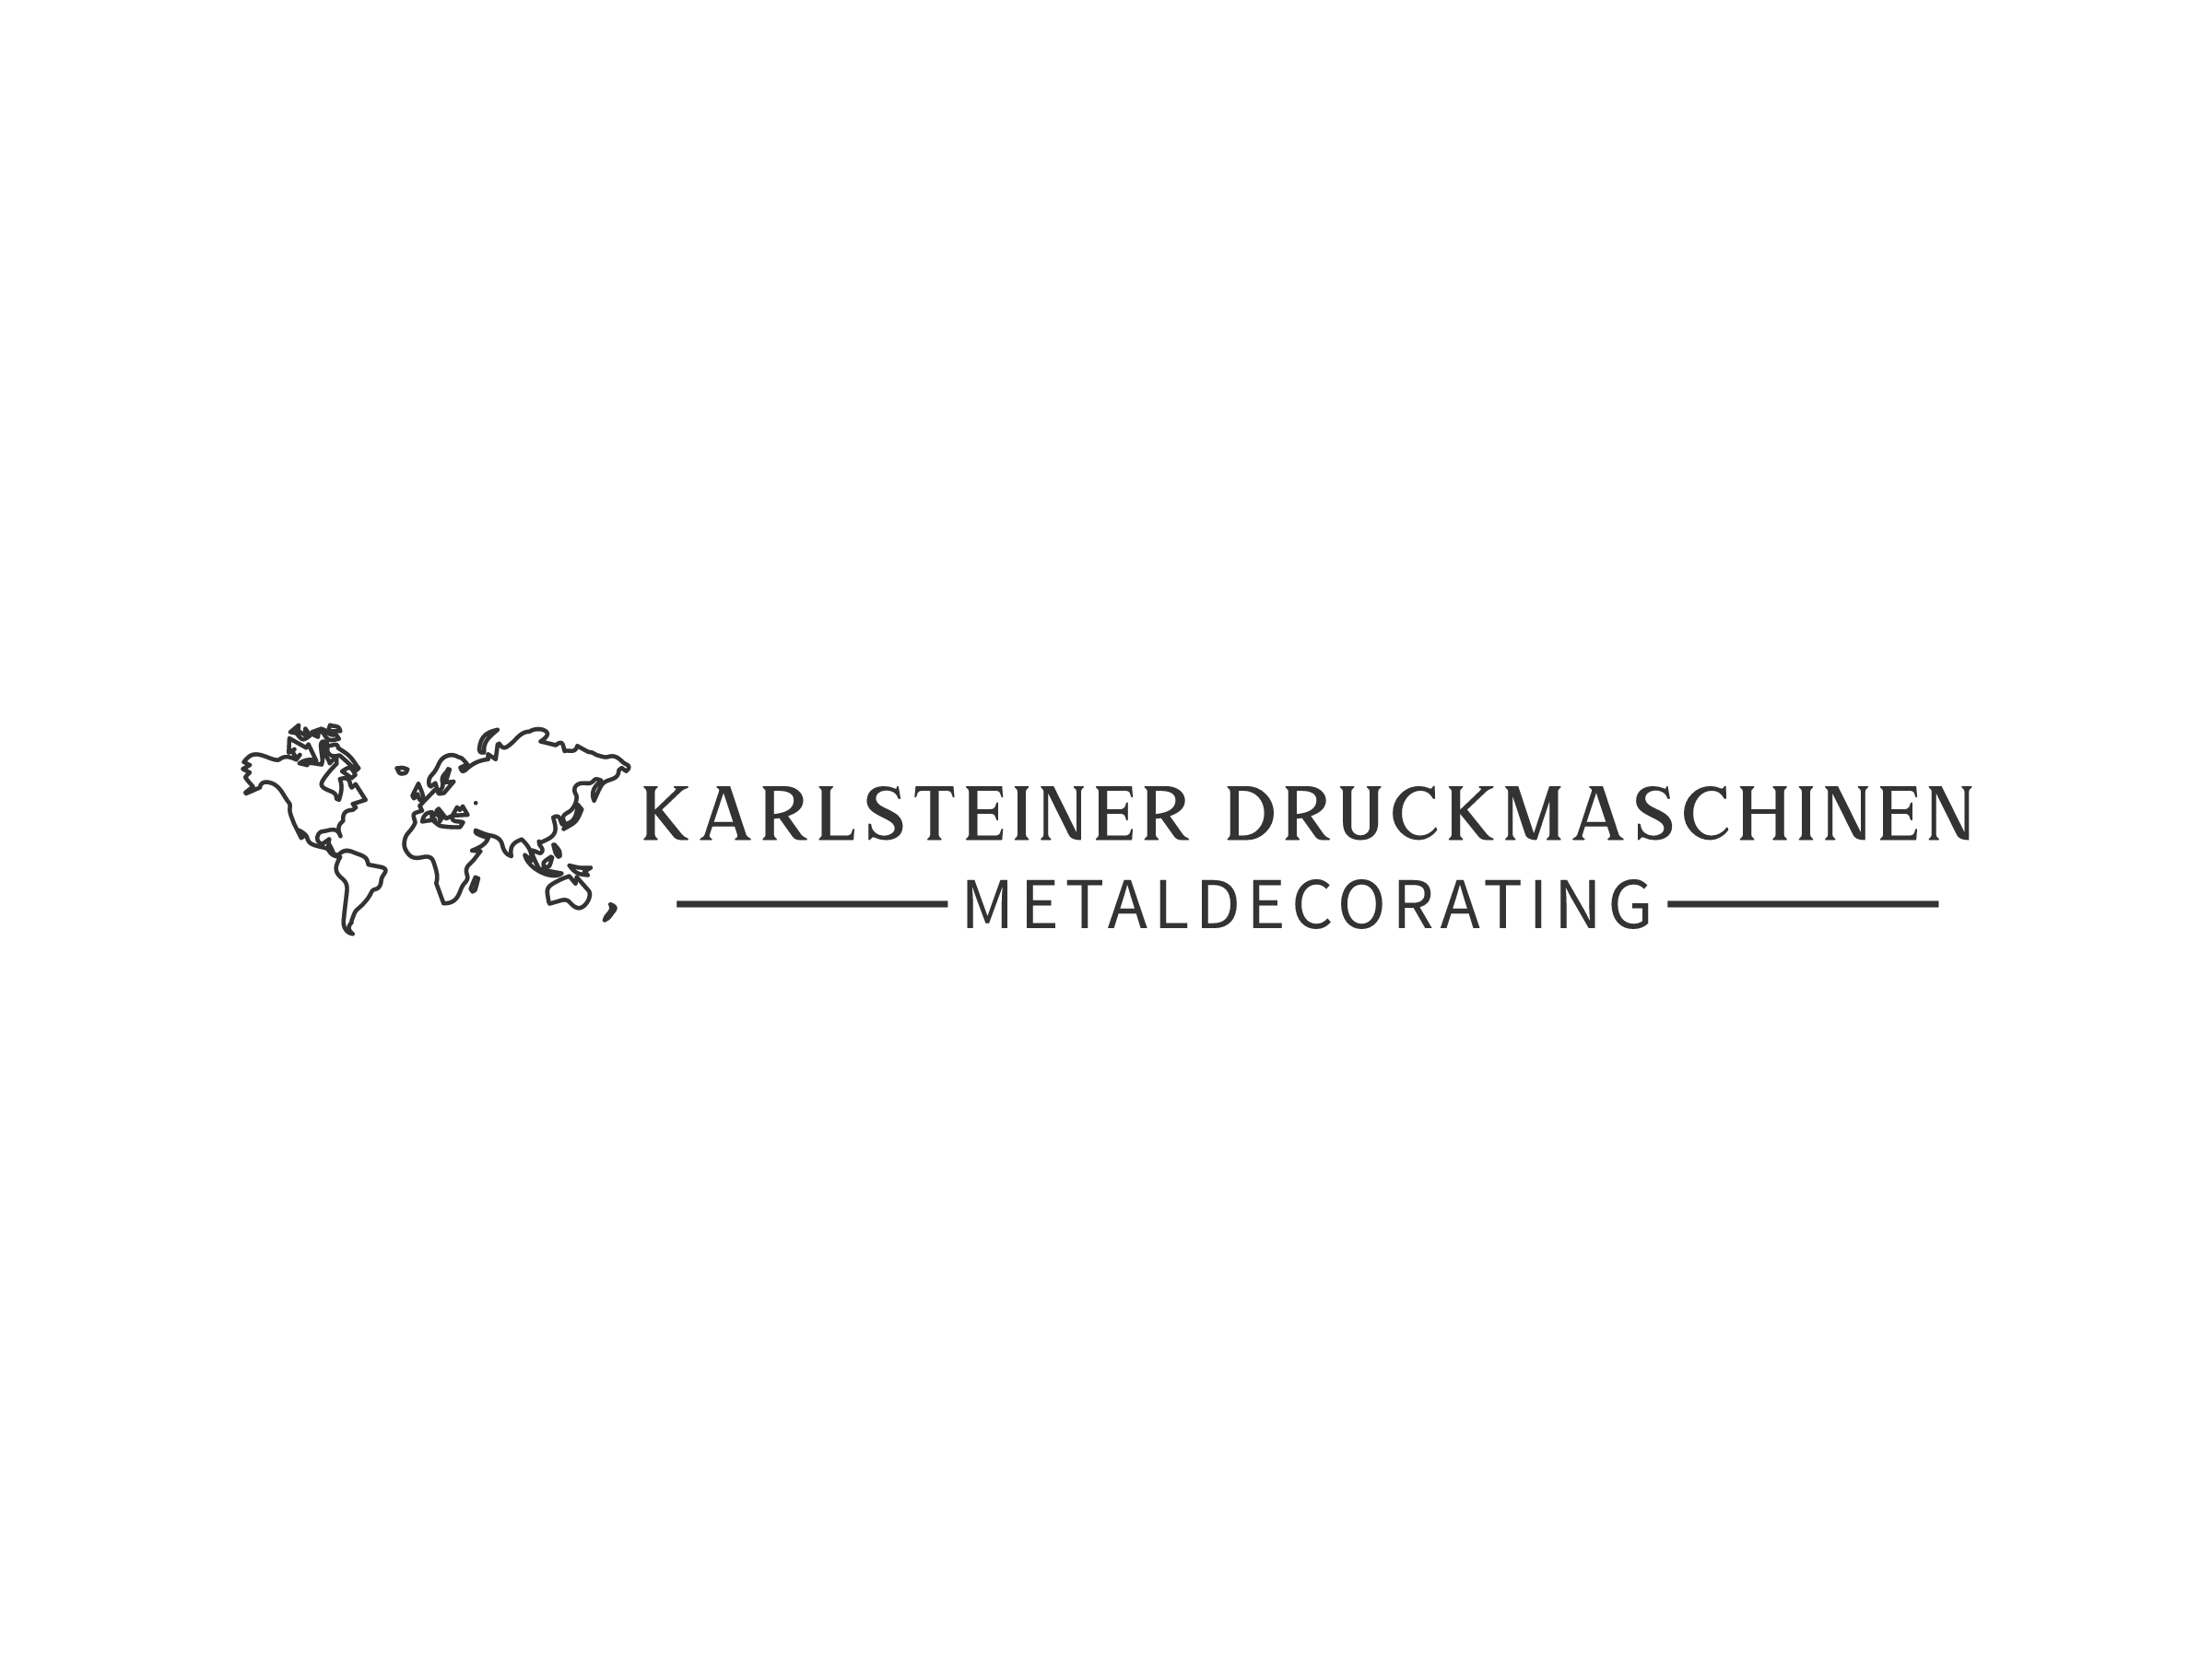 Karlsteiner Druckmaschinen